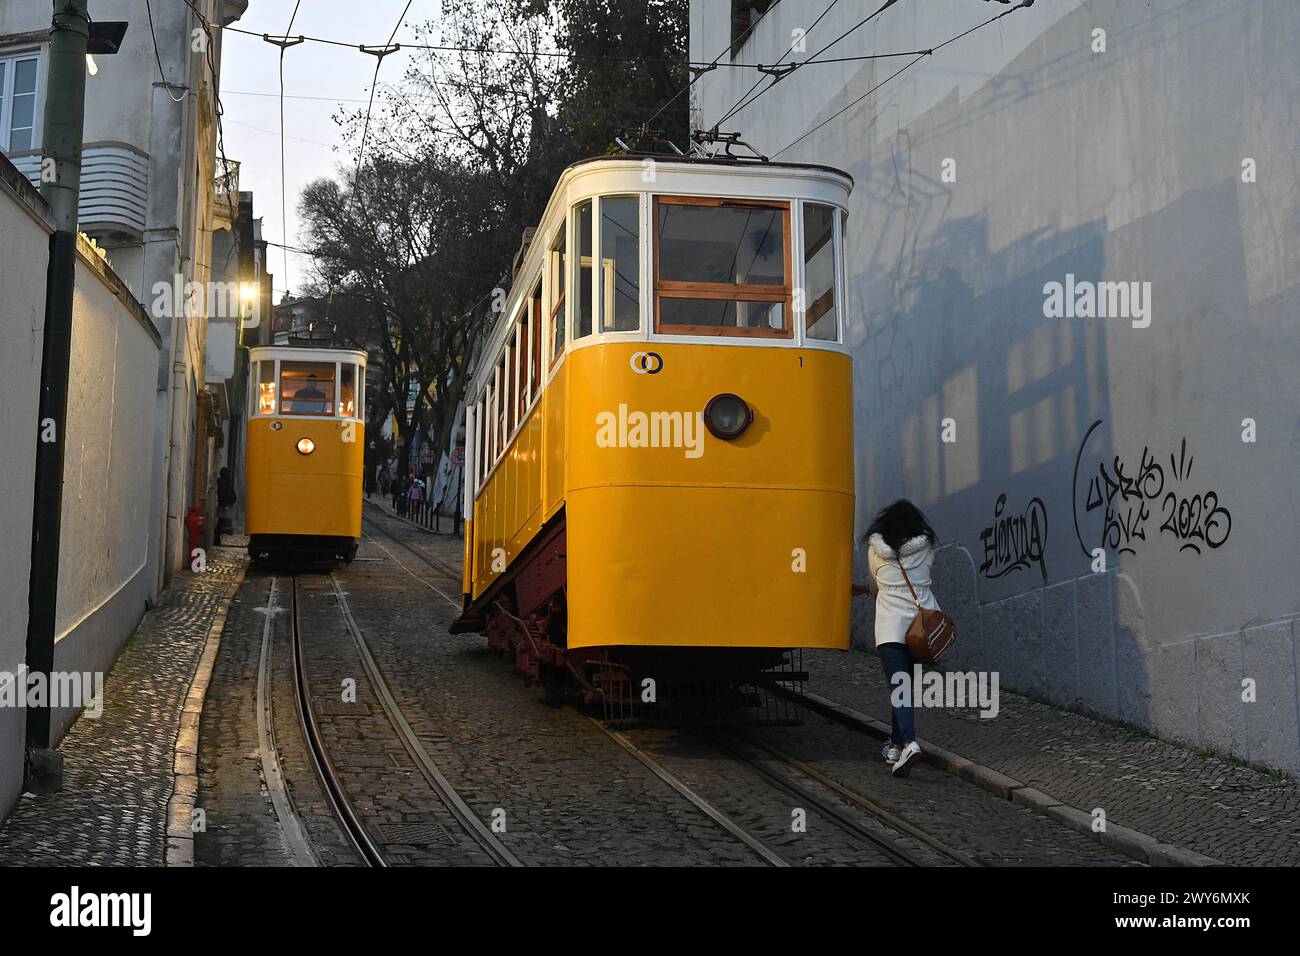 Portogallo, Lisbona: Linea ferroviaria funicolare gestita da Carris. La funicolare comprende due auto che operano parallelamente lungo due assi, che scendono e cl Foto Stock